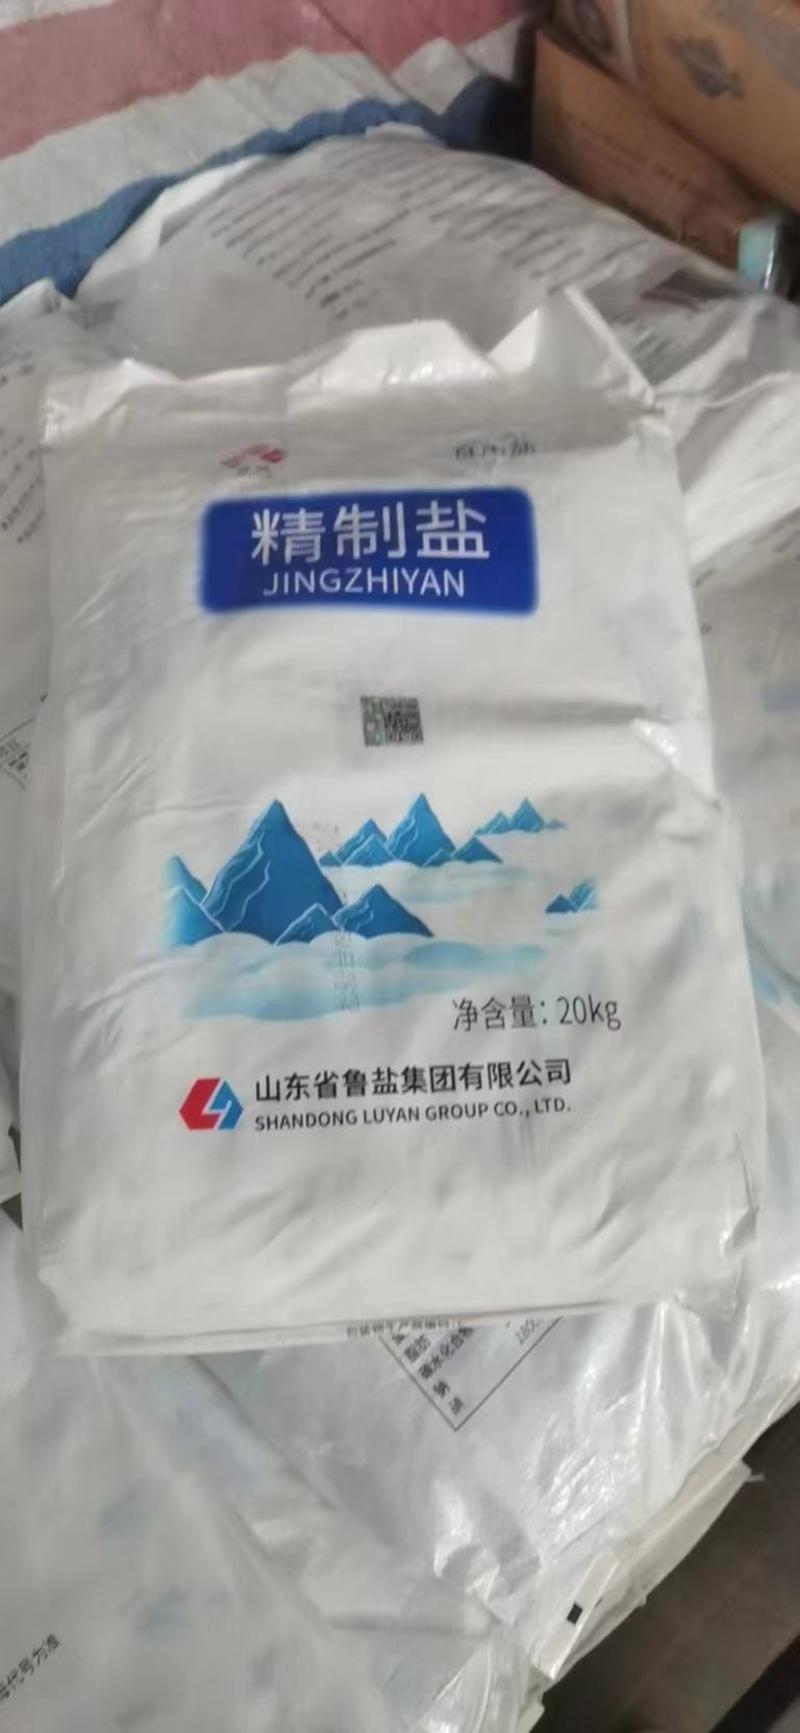 火爆产品鲁晶精制盐盐厂出货江苏，河南安徽区域合作